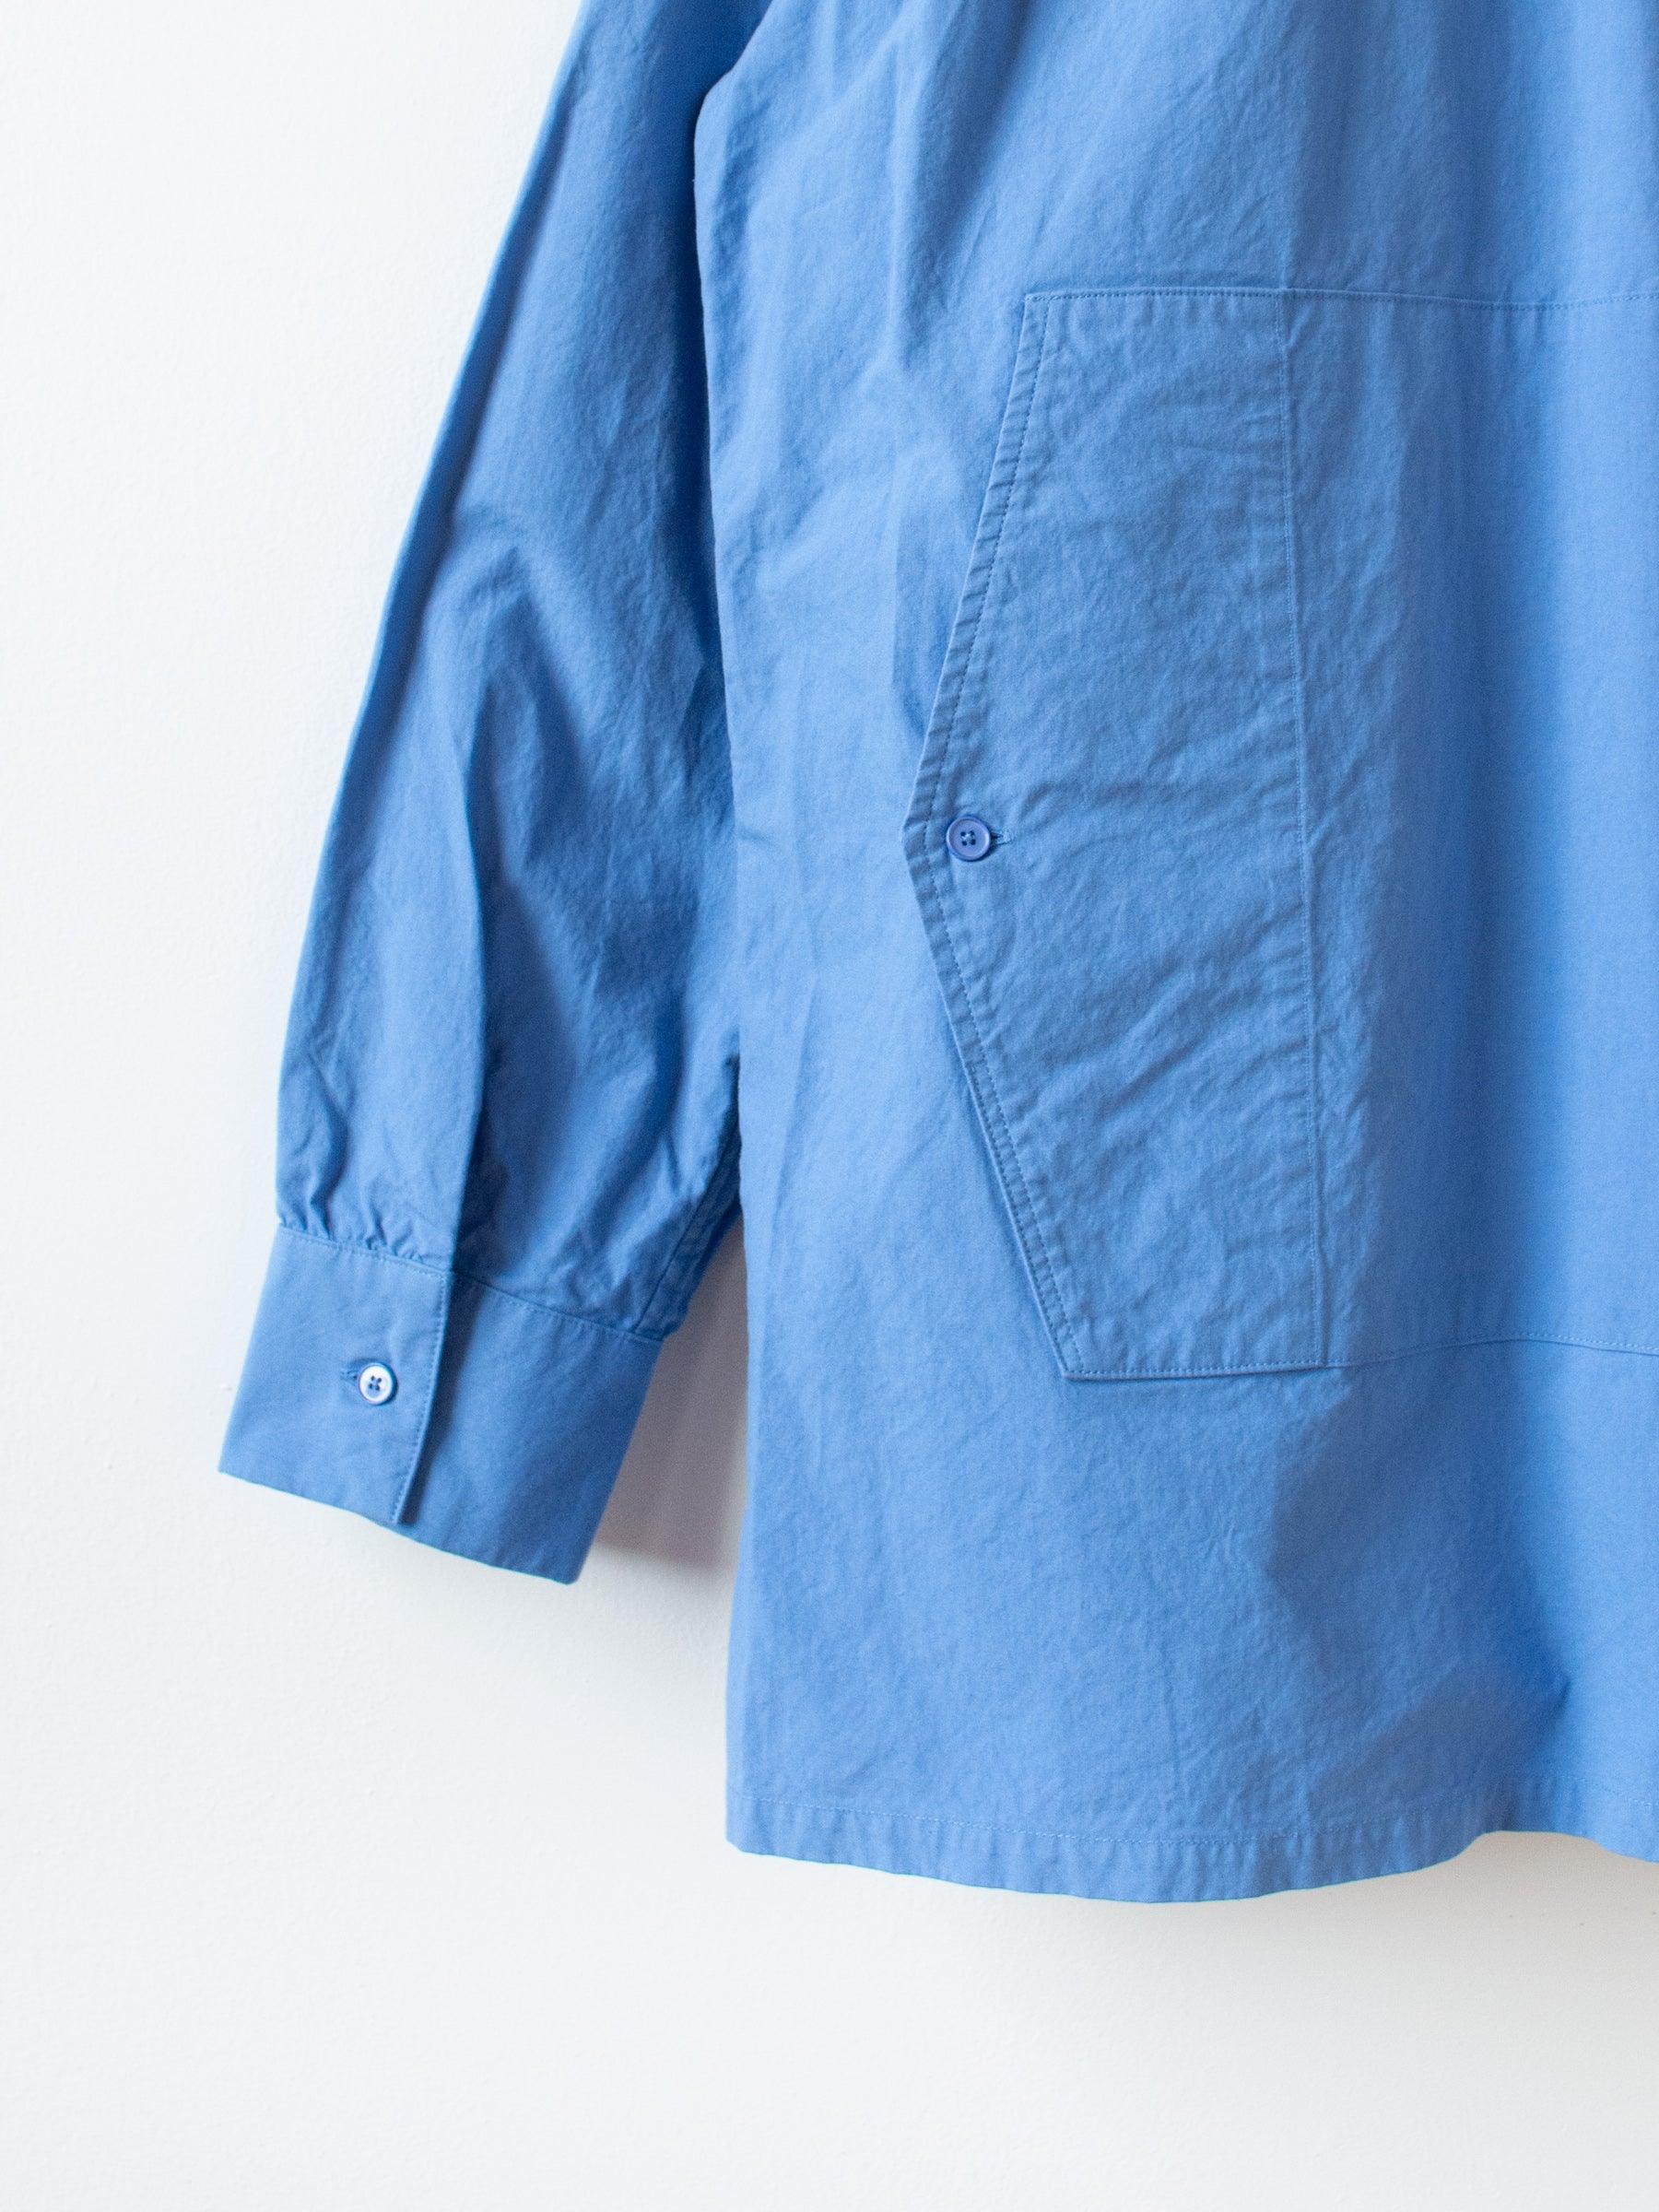 Namu Shop - S H Fishing Shirt - Blue